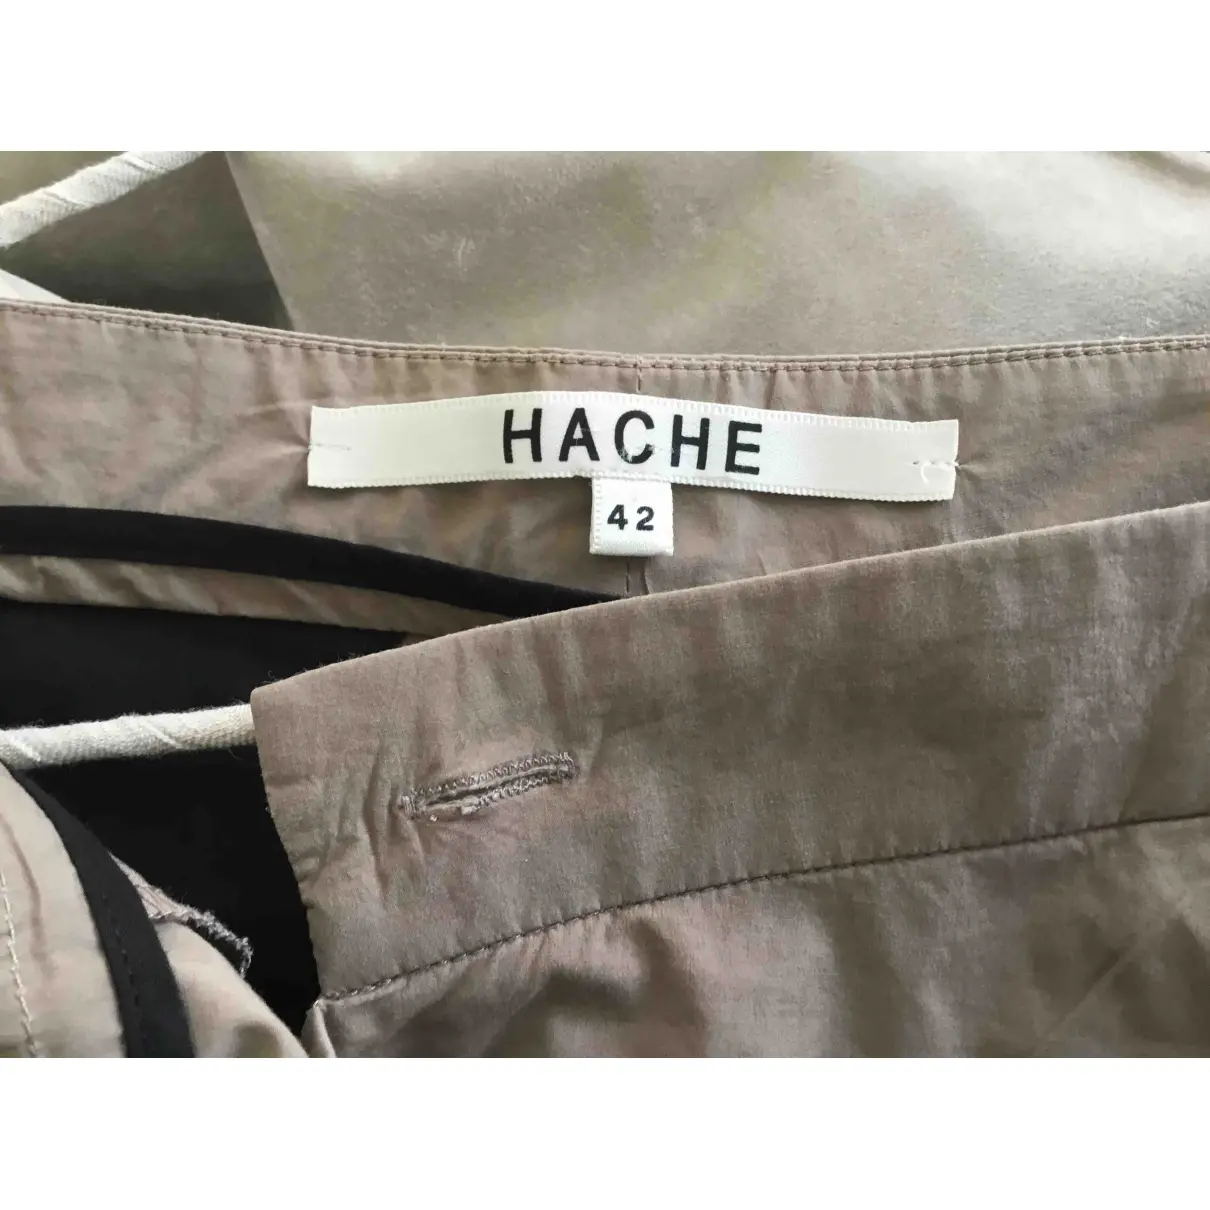 Buy Hache Carot pants online